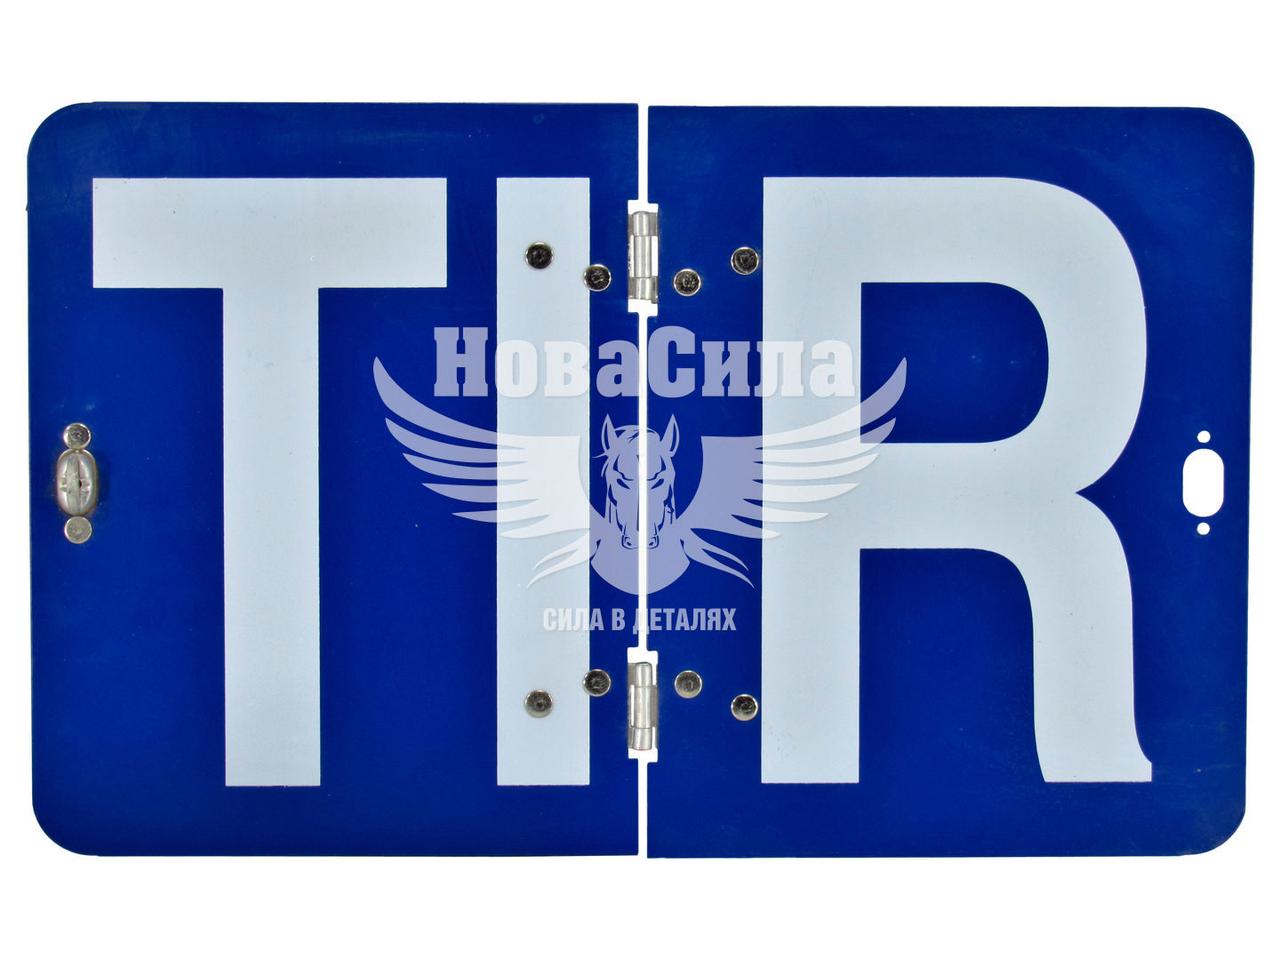 Знак (табличка) (TIR) метал. син. фон складна (Турція)